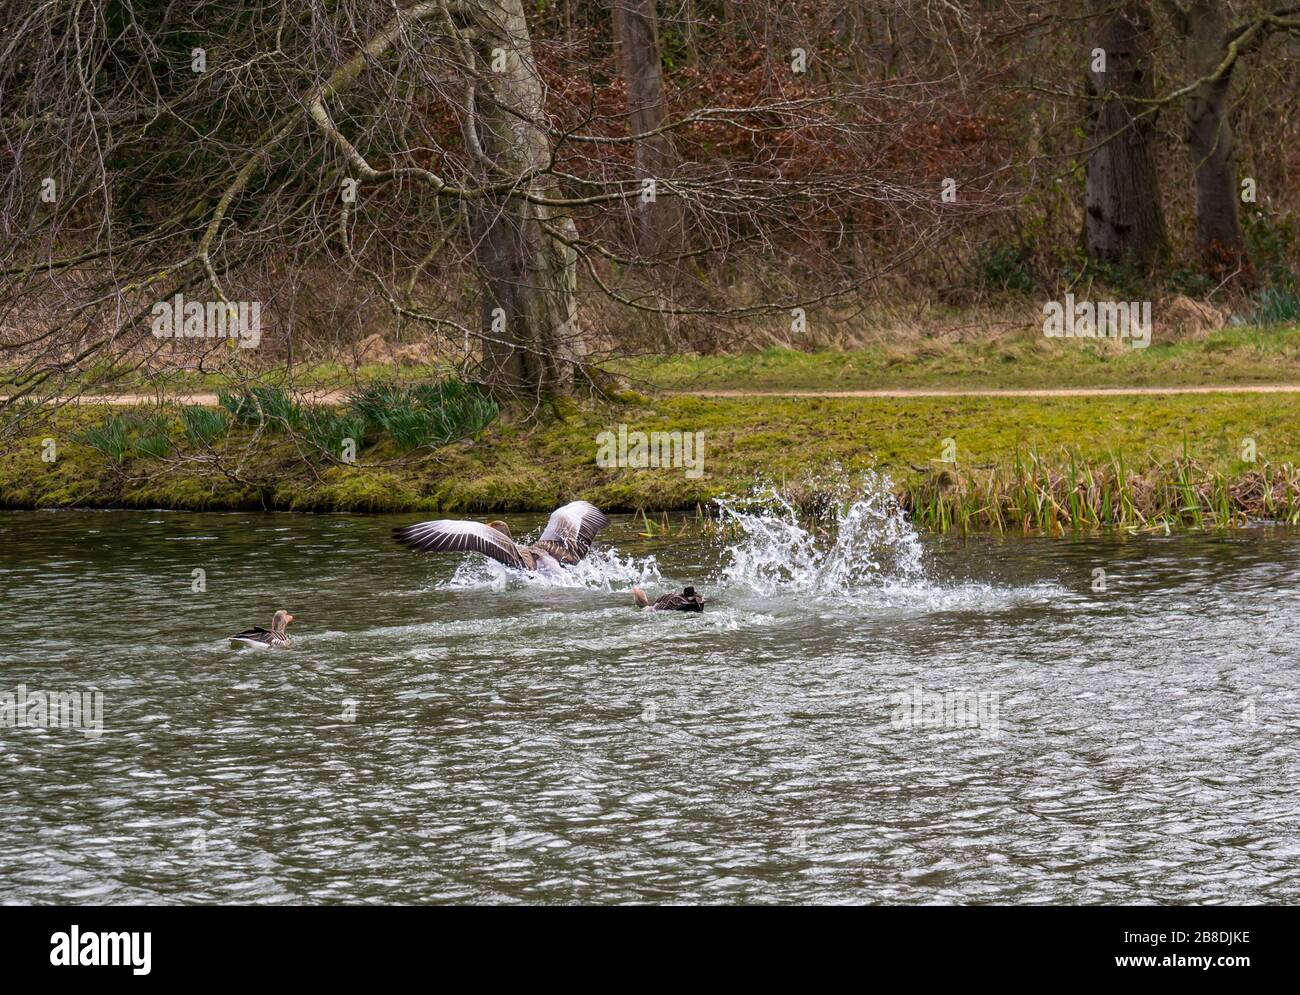 Rival de chasse d'oie grislag mâle en saison d'accouplement dans un lac artificiel, Gosford Estate, East Lothian, Ecosse, Royaume-Uni Banque D'Images